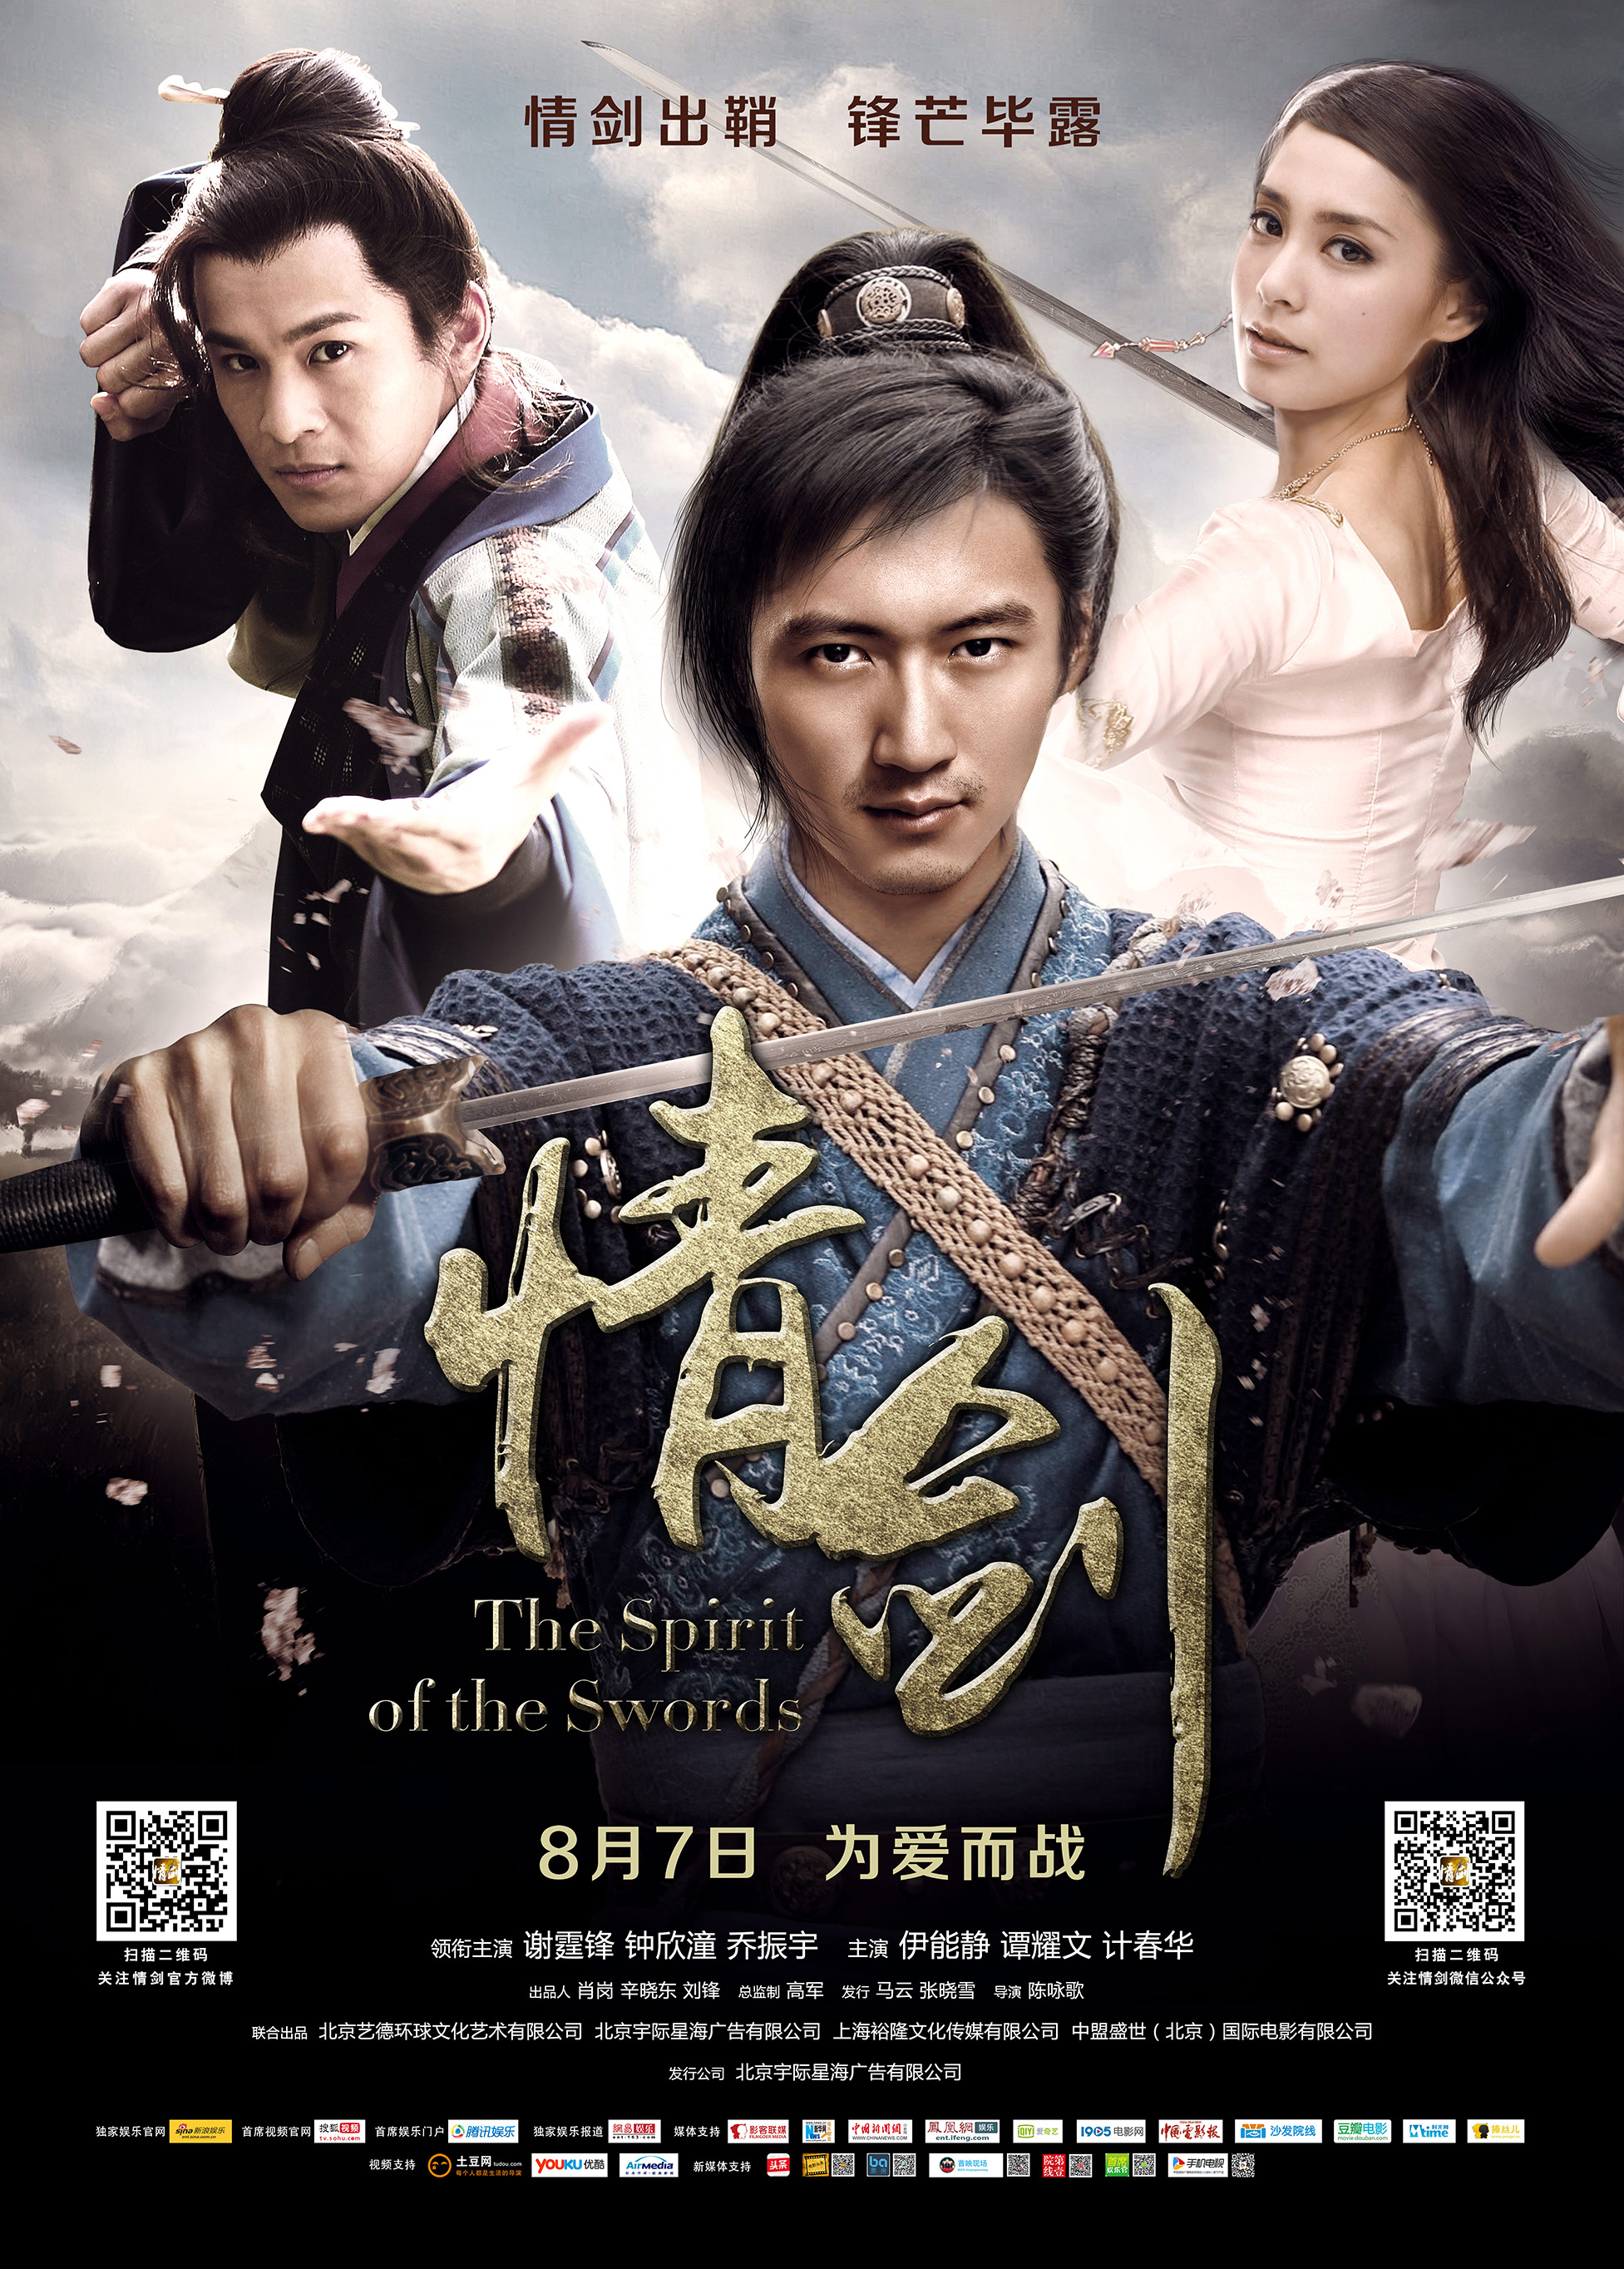 情剑 - The Spirit of the Swords